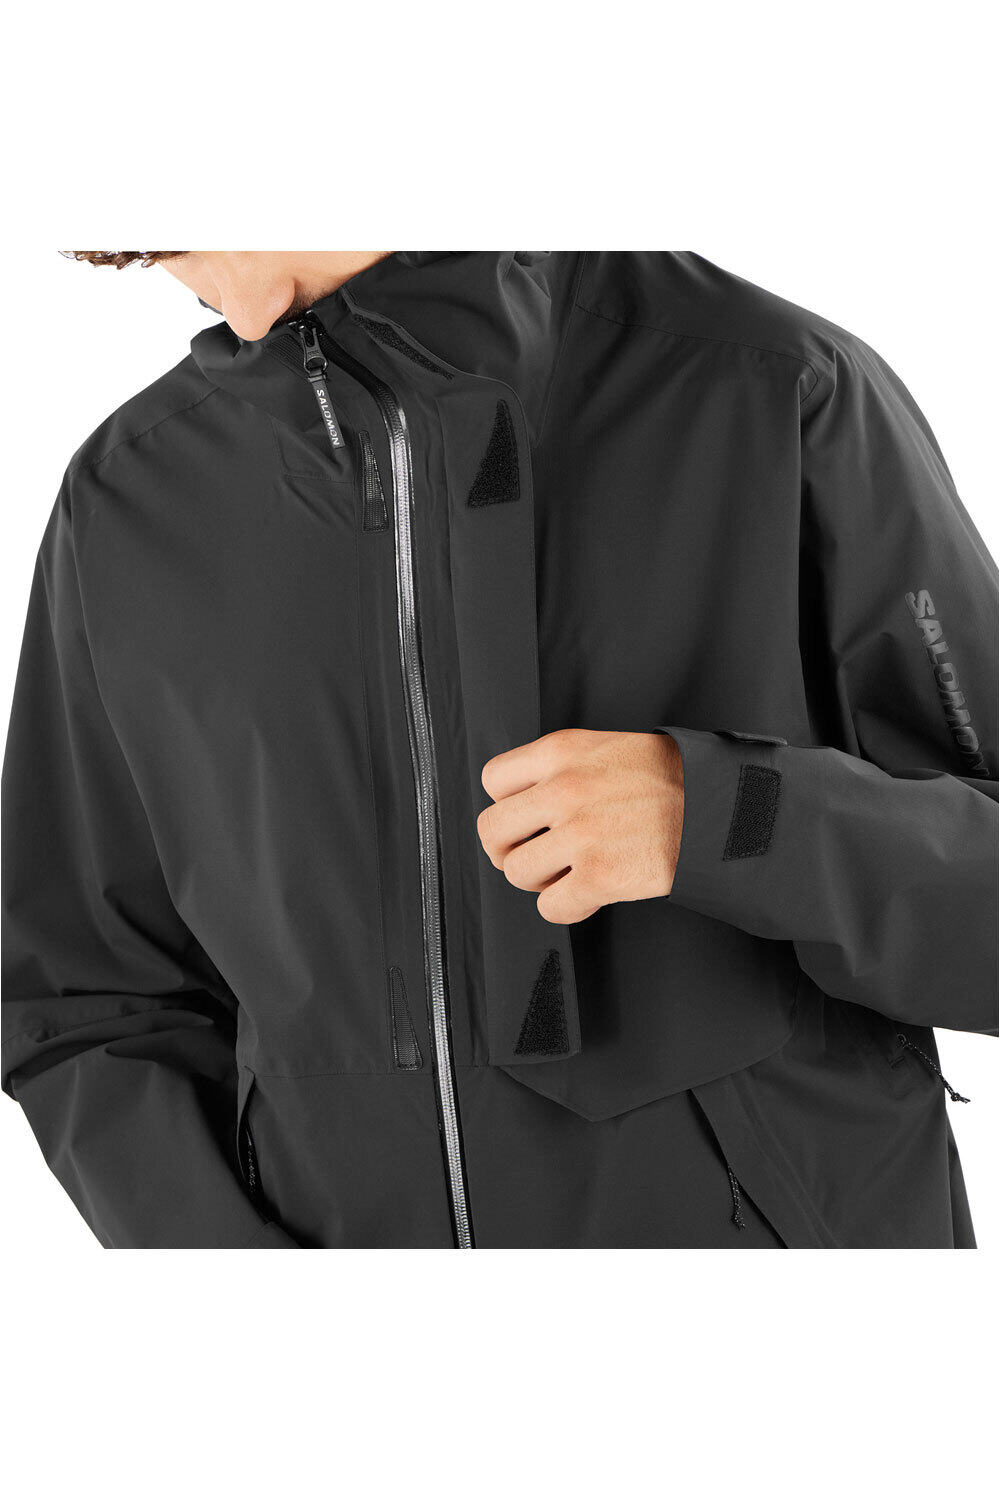 Salomon chaqueta impermeable hombre OUTERPATH JKT WP PRO M 05